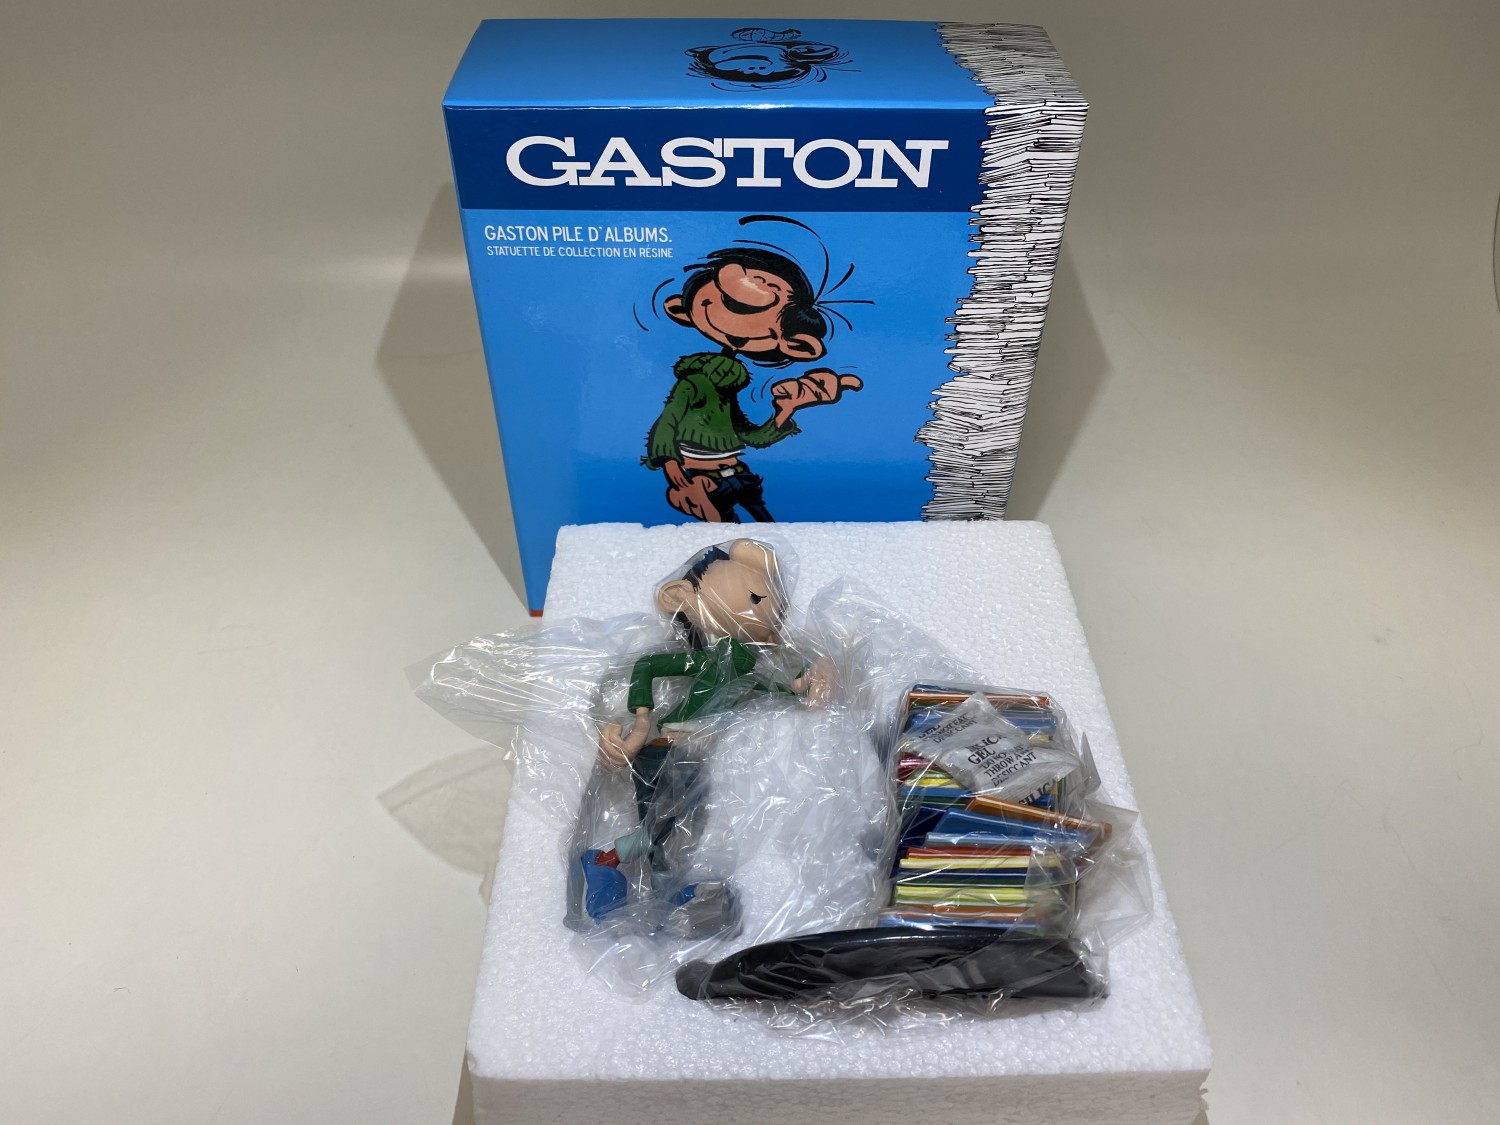 Gaston pile d'albums